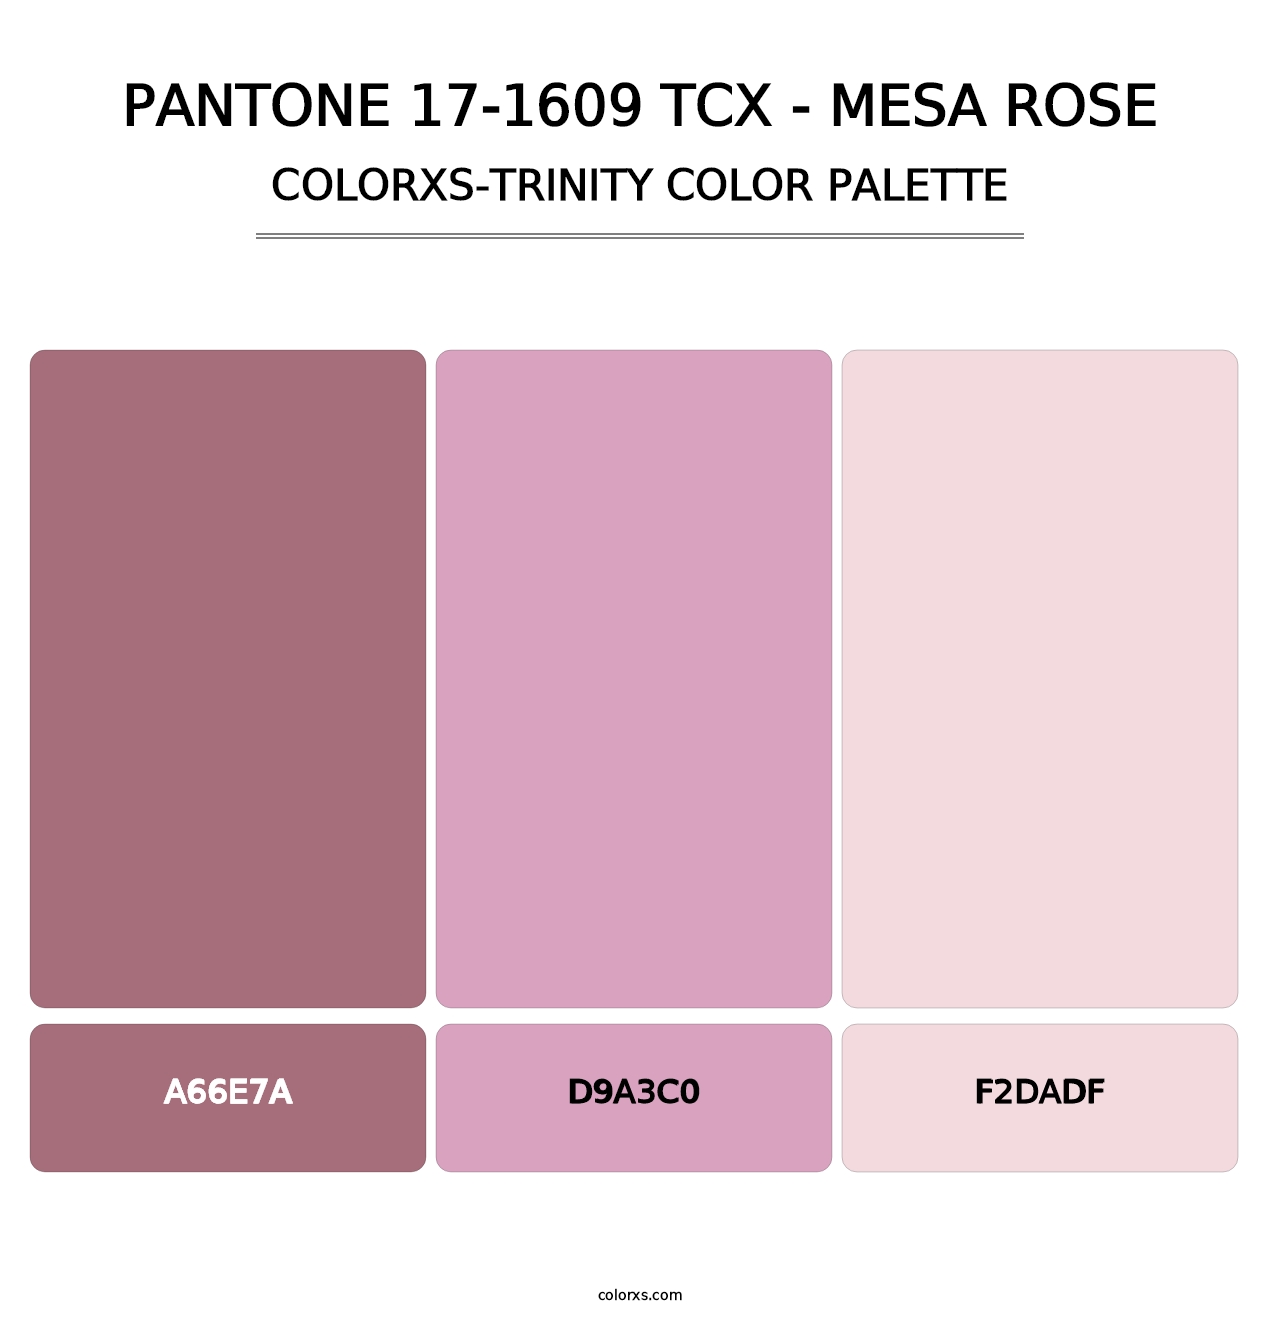 PANTONE 17-1609 TCX - Mesa Rose - Colorxs Trinity Palette